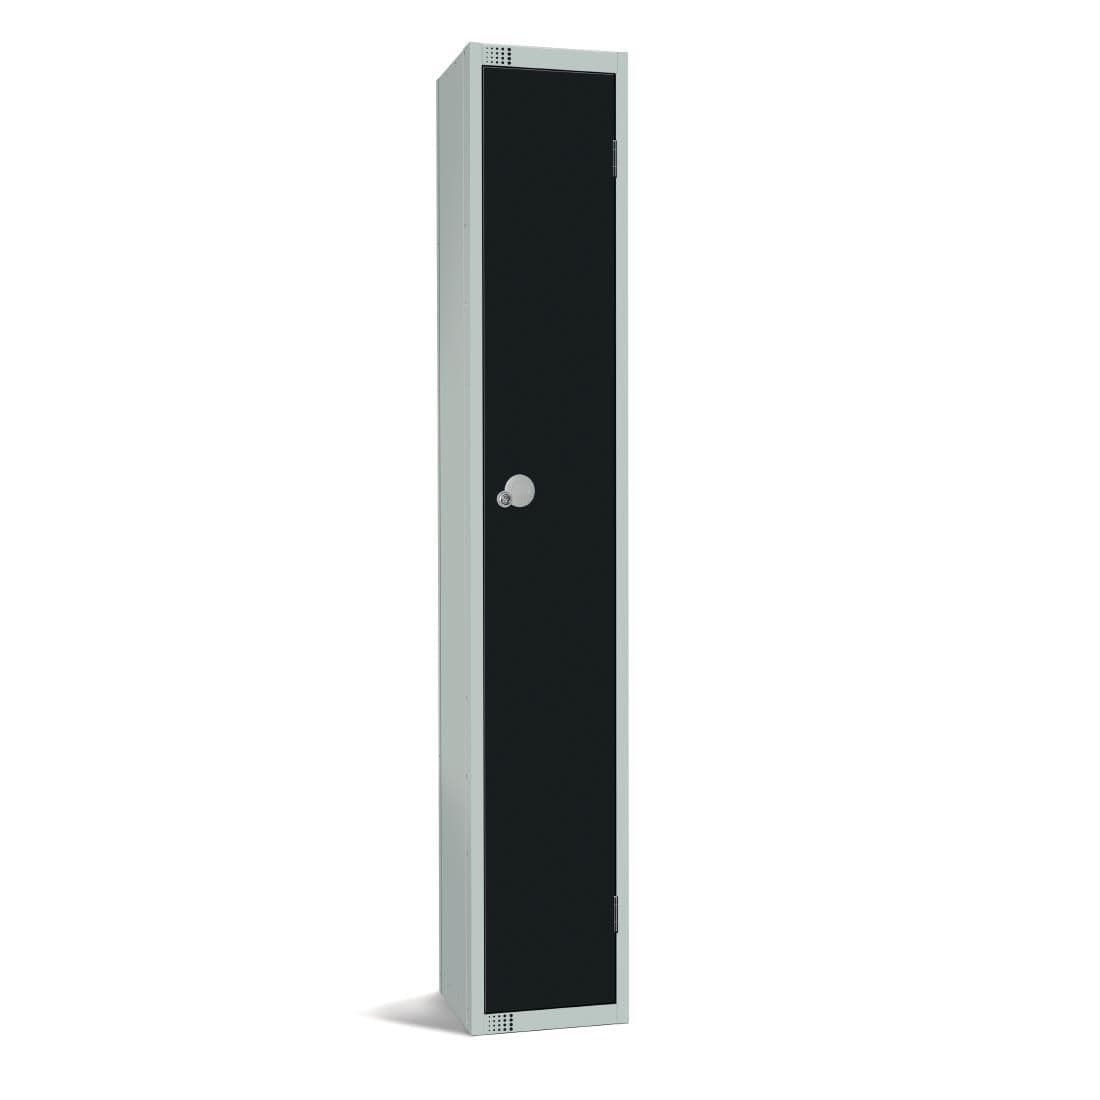 GR670-CL Elite Single Door Manual Combination Locker Locker Black JD Catering Equipment Solutions Ltd